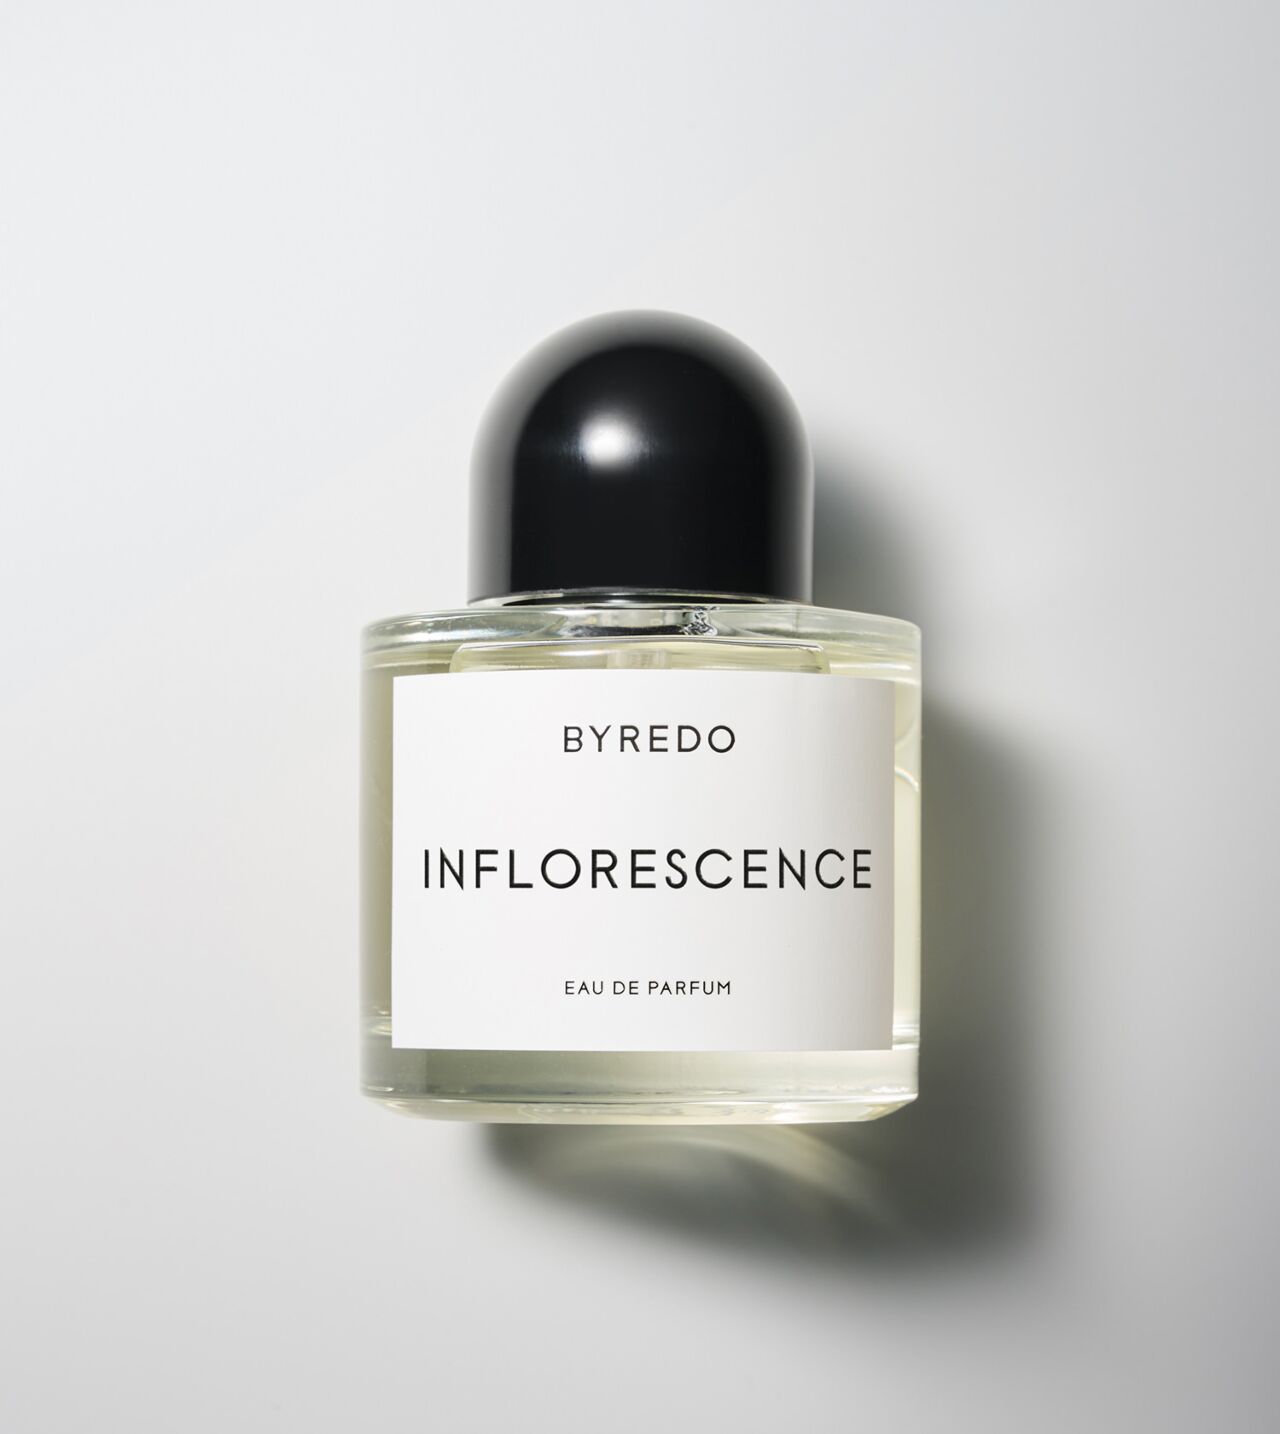 Byredo Eau de Parfum Inflorescence 3.4 fl oz